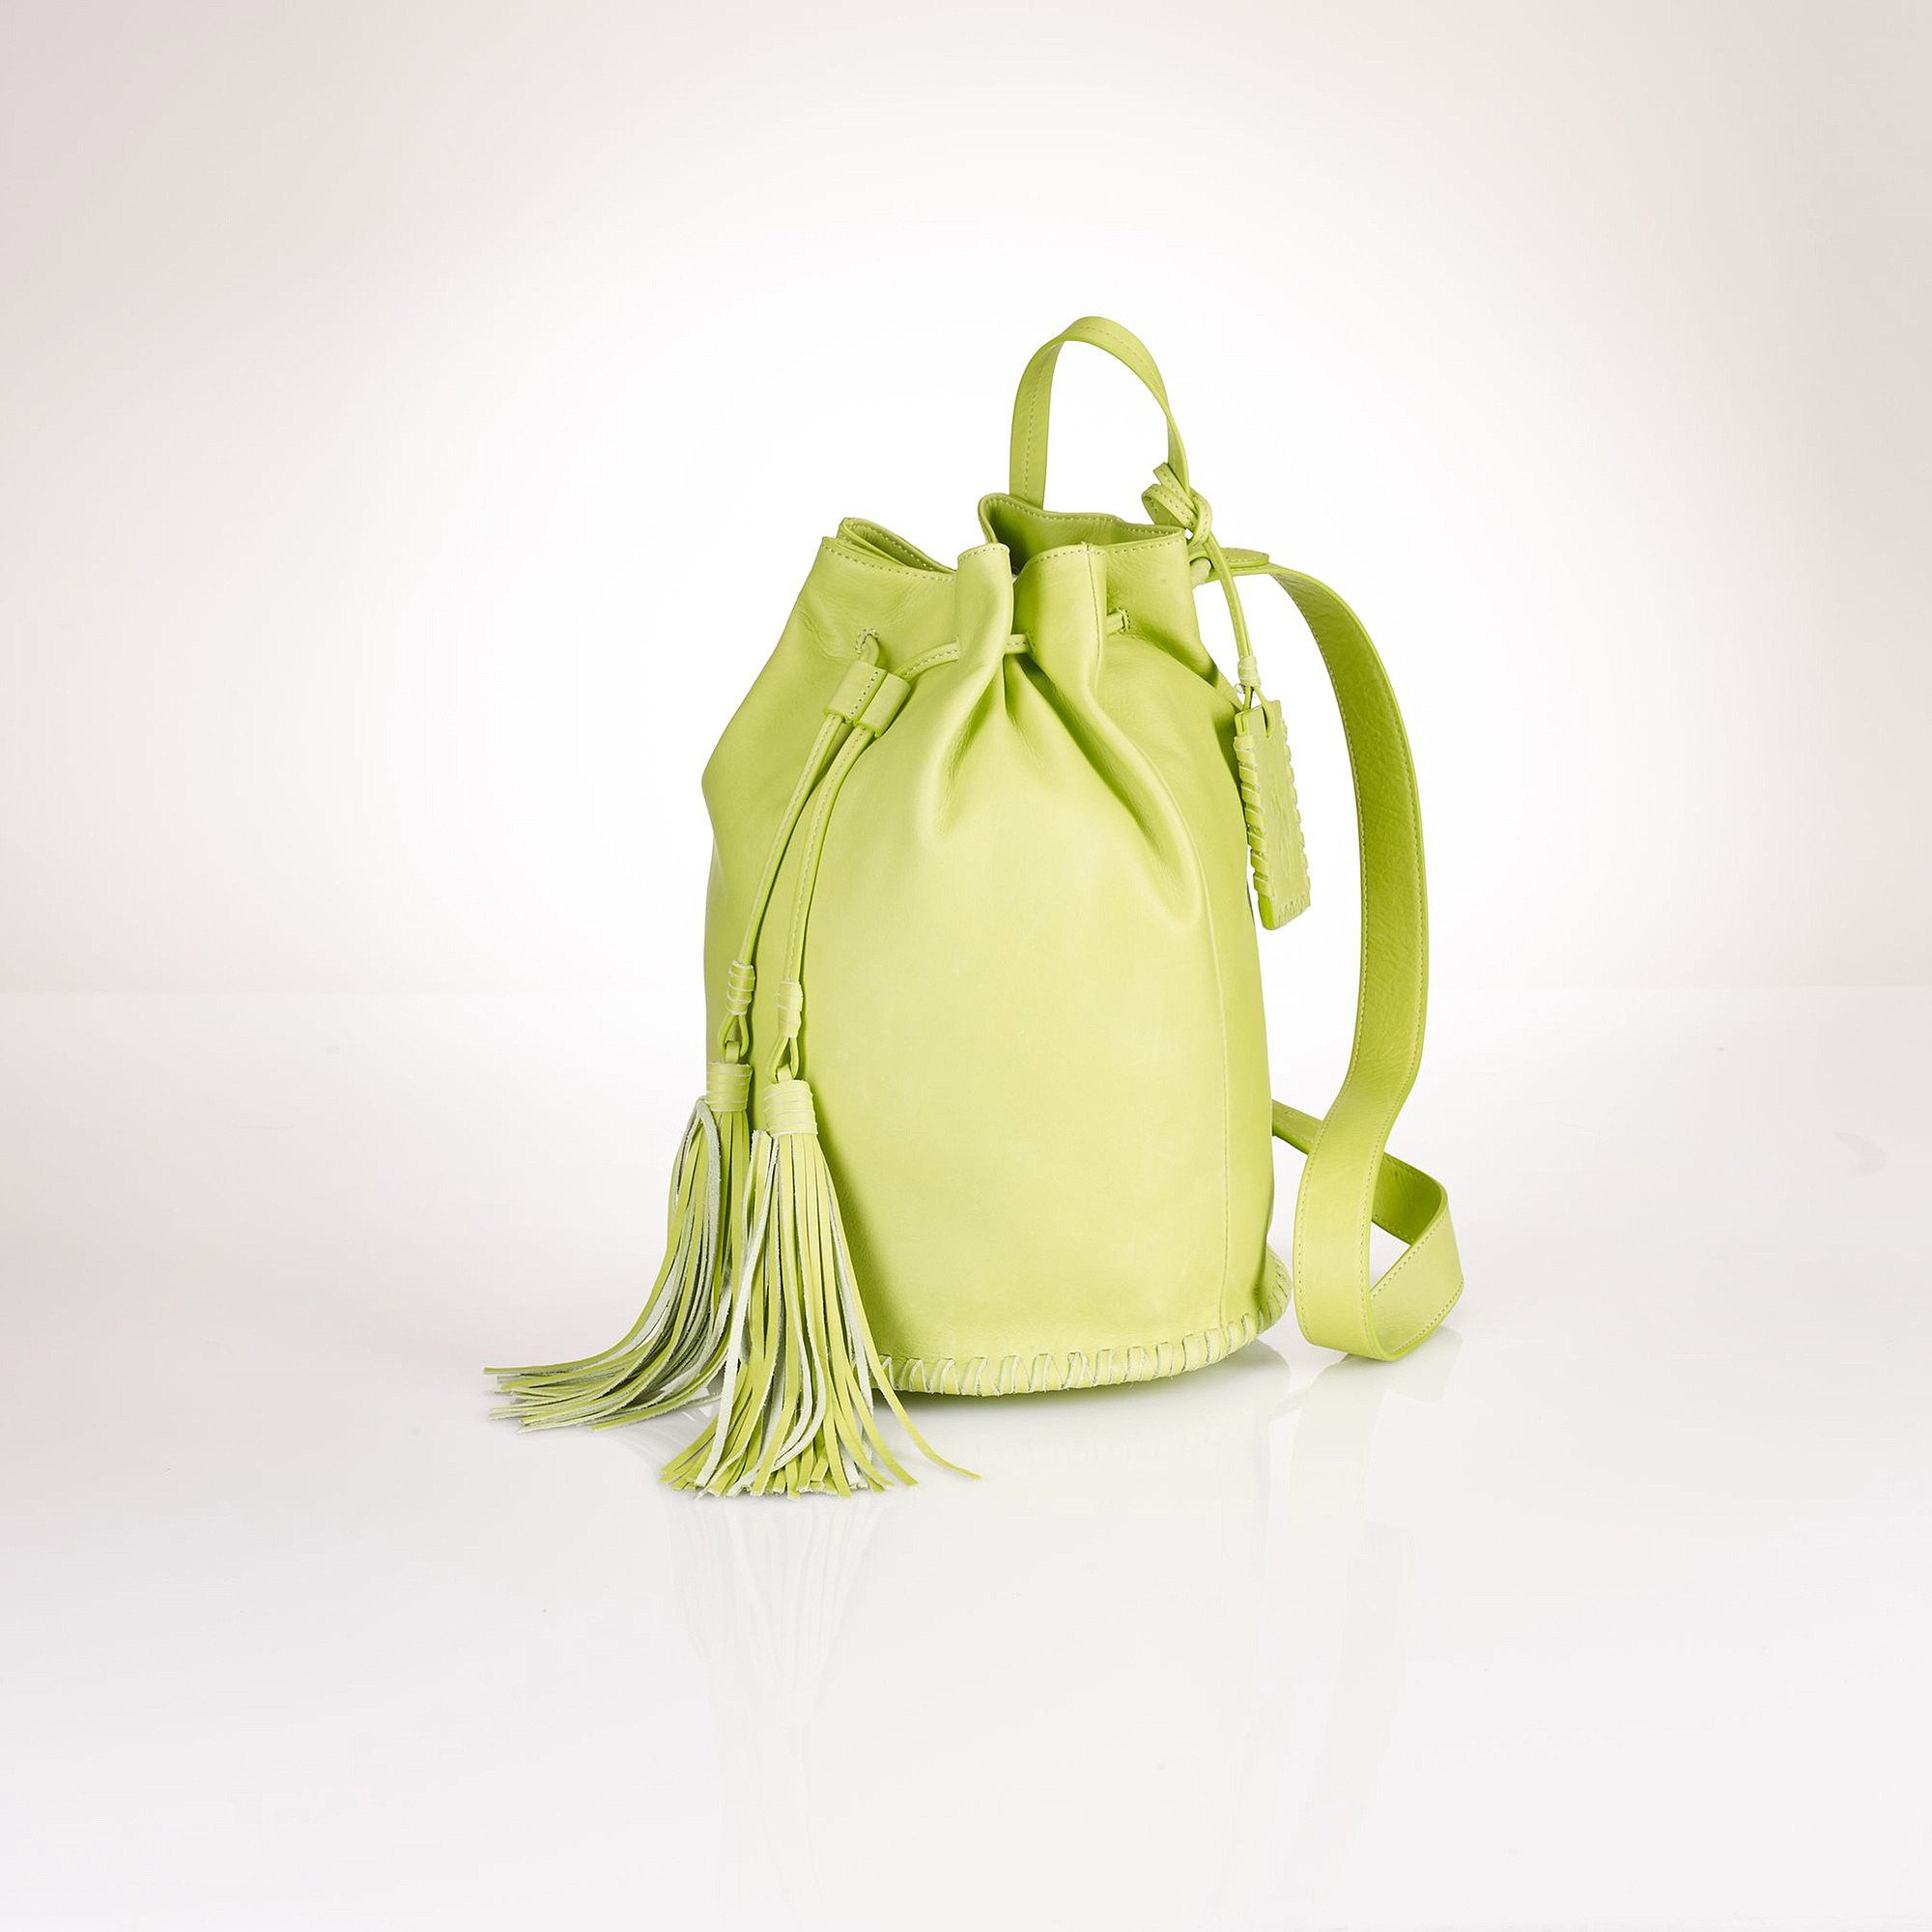 Ralph Lauren
Polo Ralph Lauren fringed drawstring backpack, $450 at ralphlauren.com.